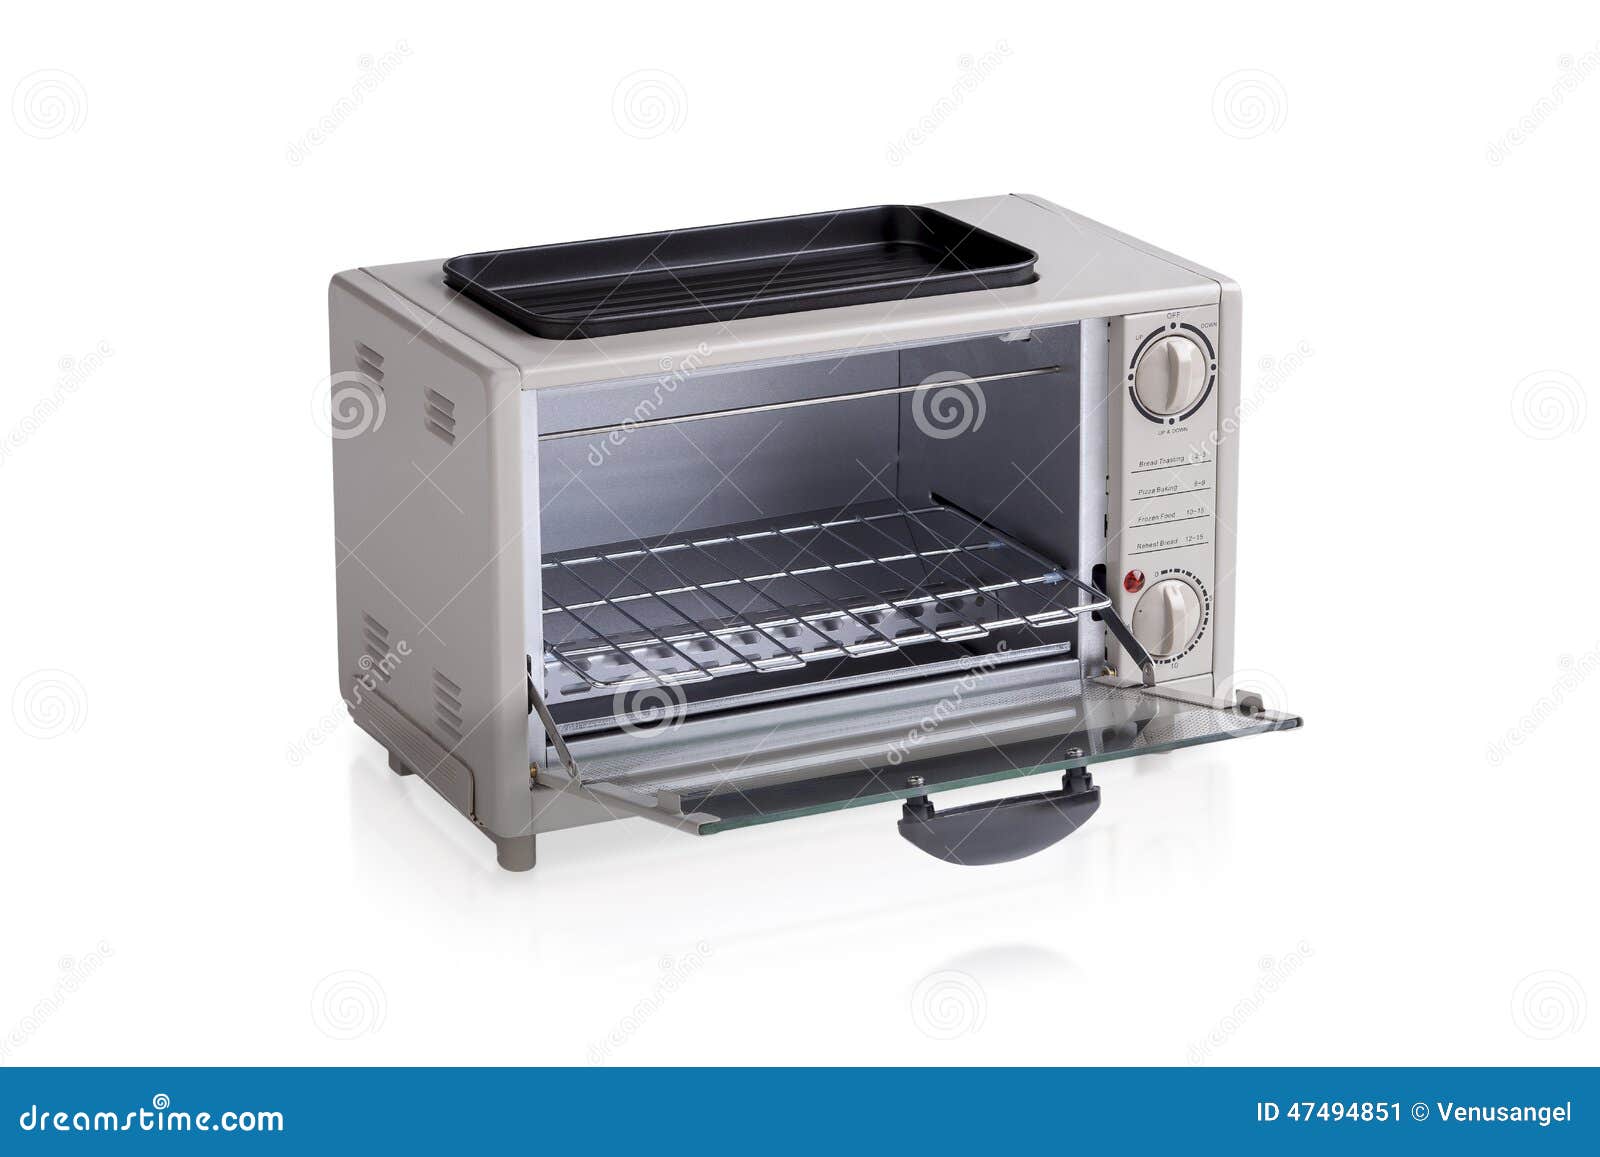 Kleine elektrische oven stock afbeelding. Image of -